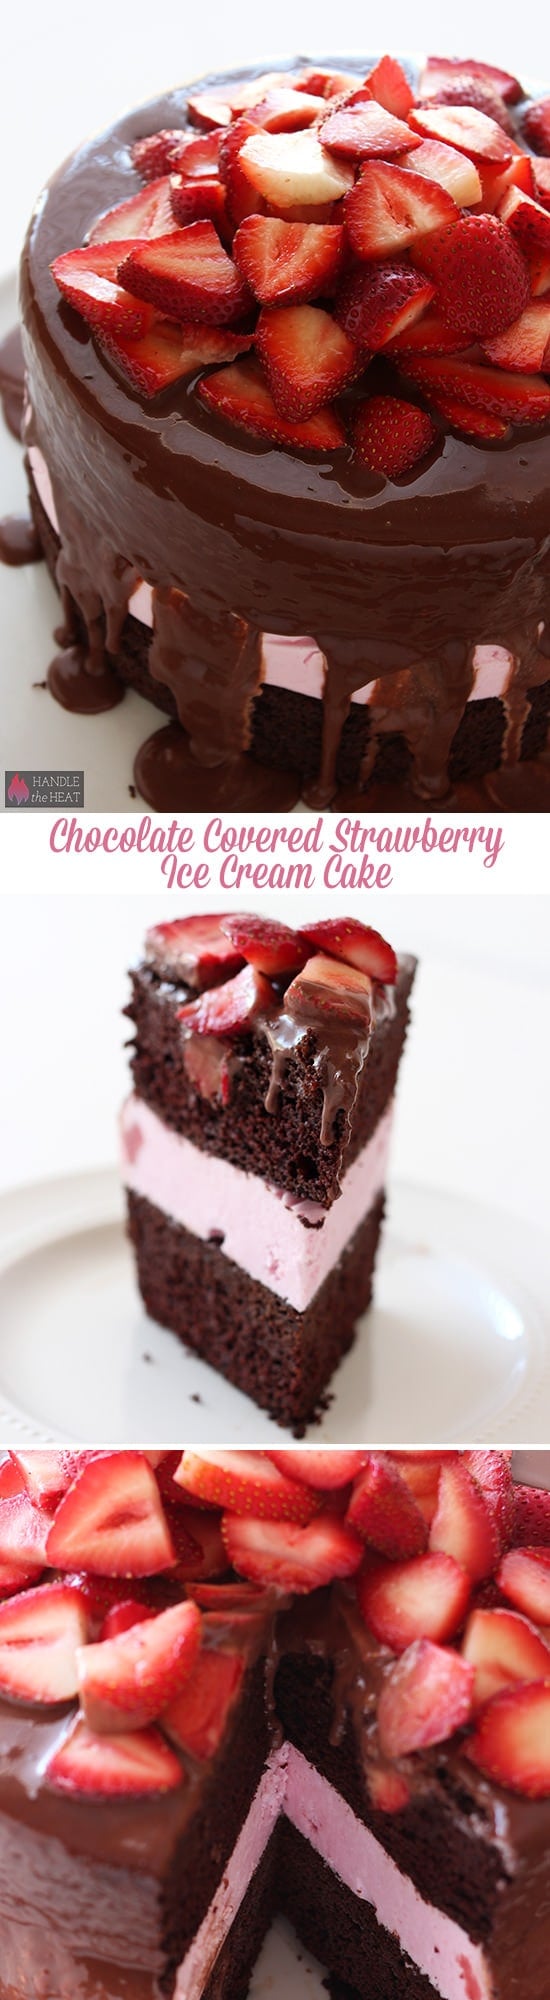 Homemade Chocolate Covered Strawberry Ice Cream Cake